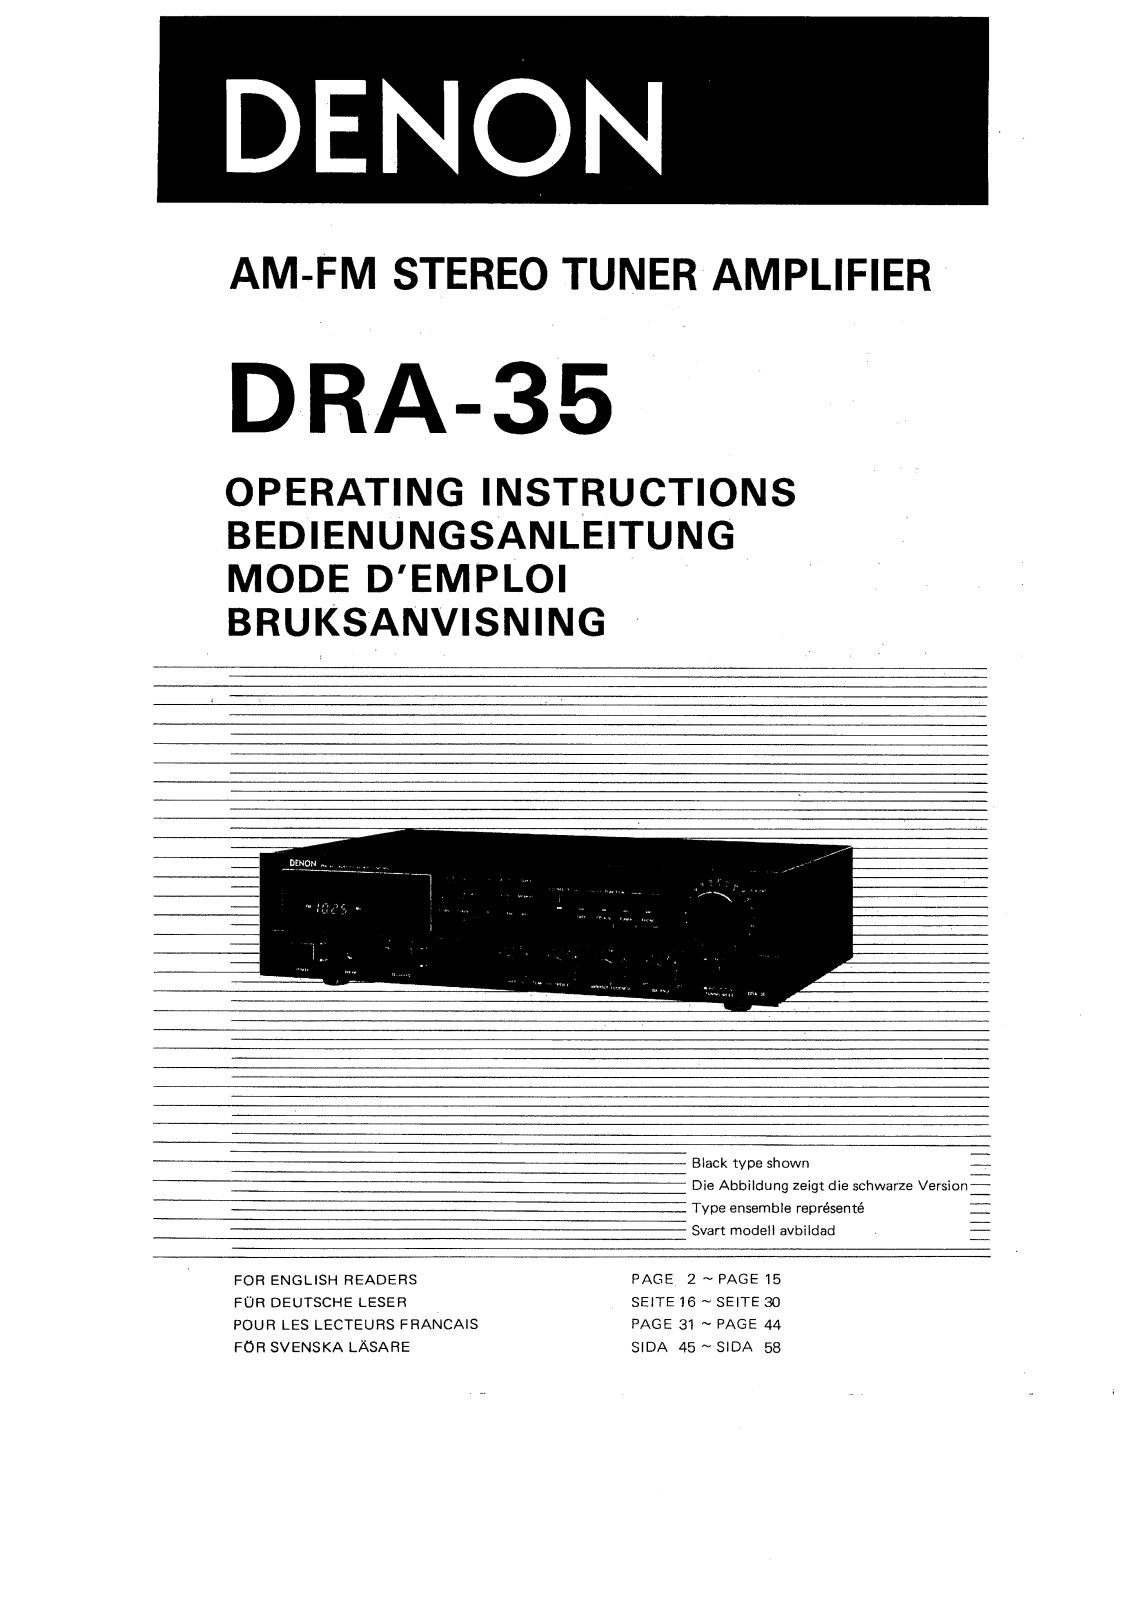 Denon DRA-35 Owner's Manual